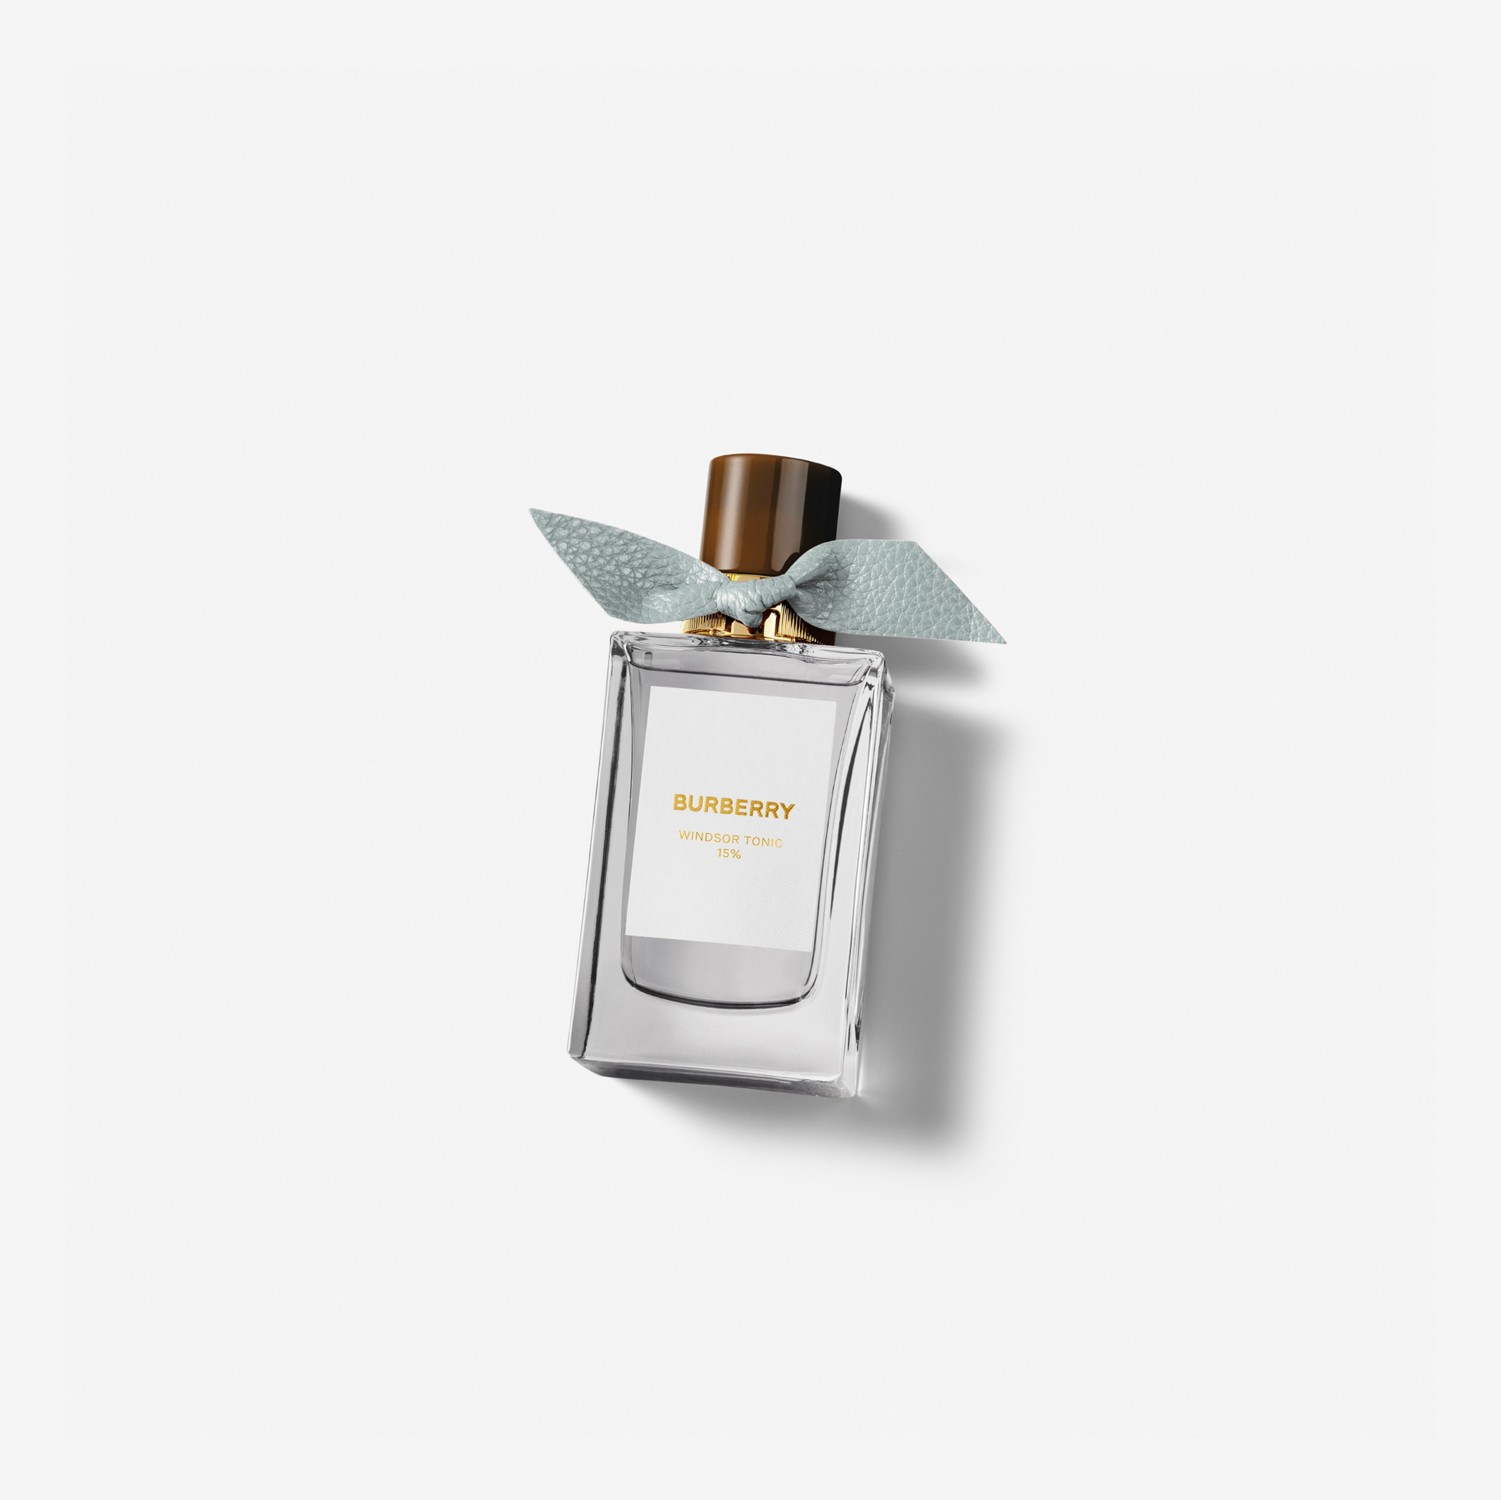 Burberry Signatures Eau de Parfum de 100 ml - Windsor Tonic | Burberry® oficial